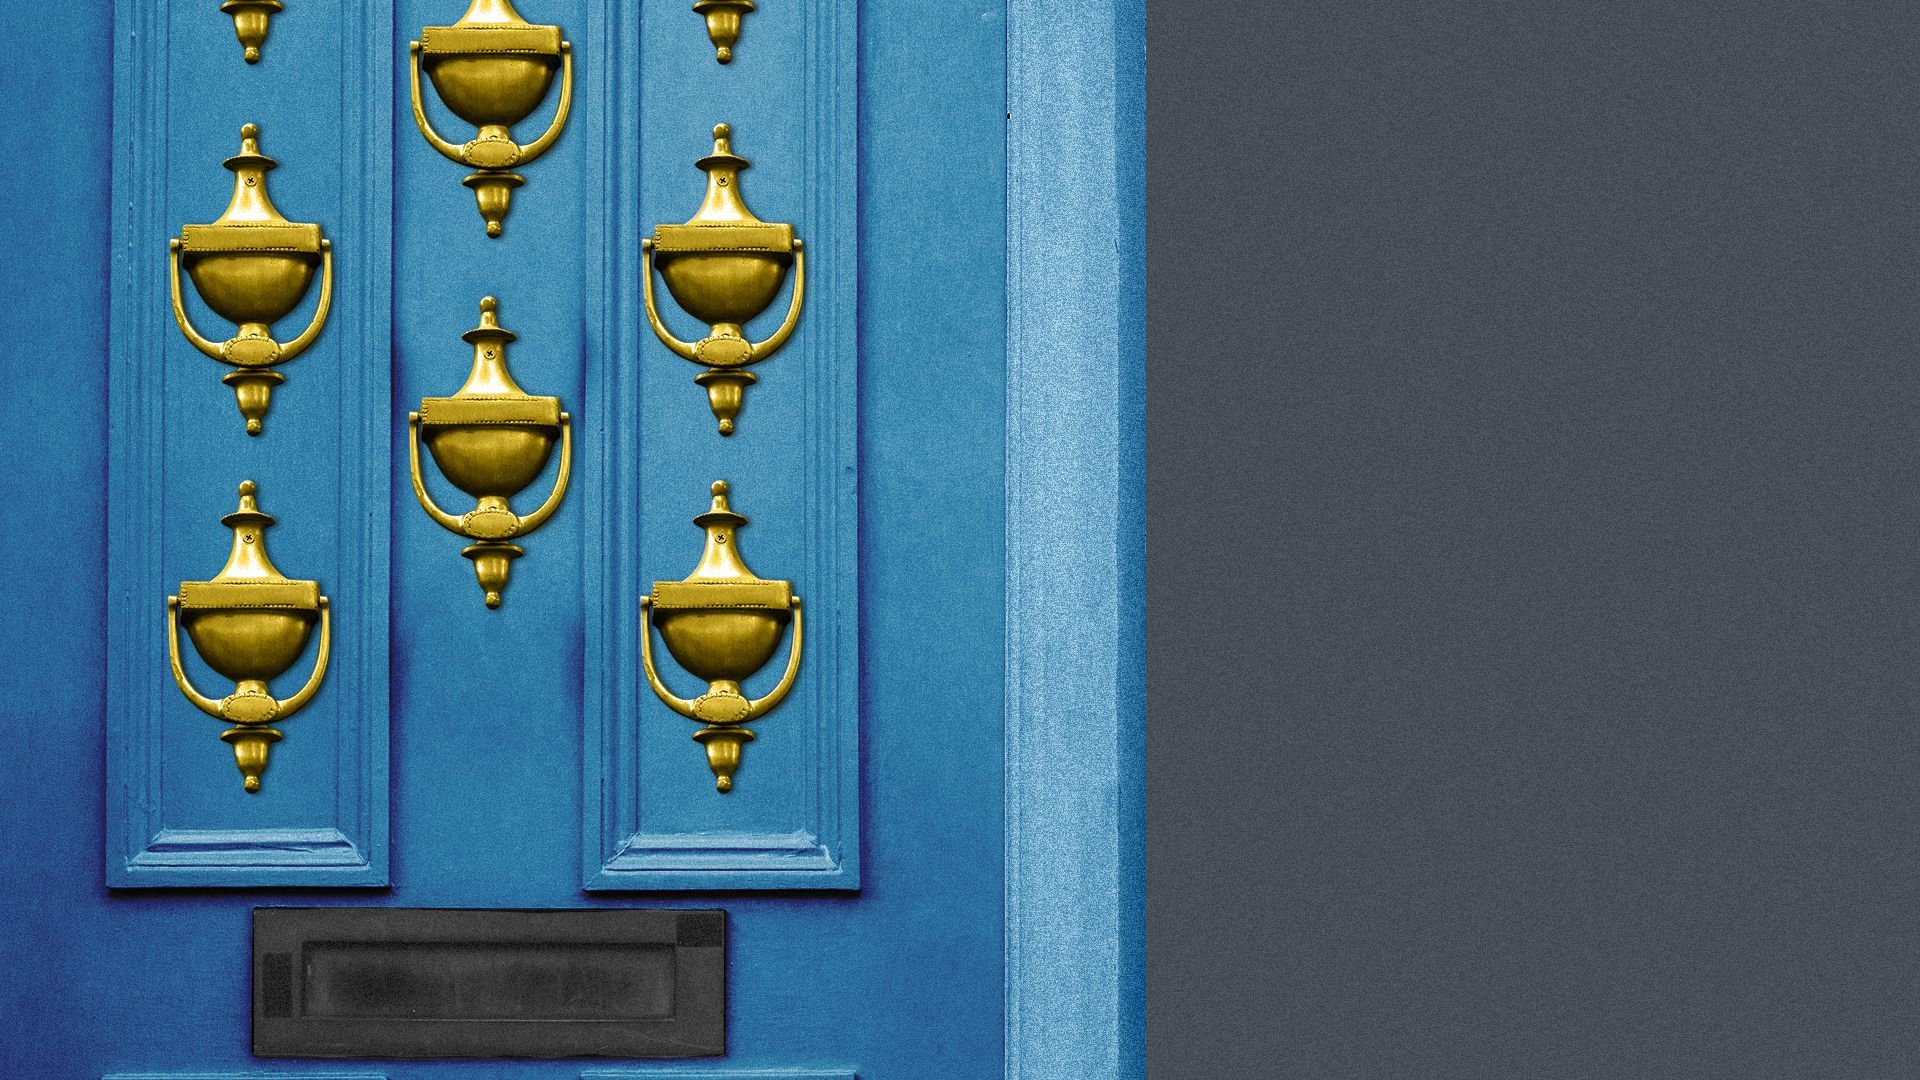 Illustration of a door with multiple door knockers.